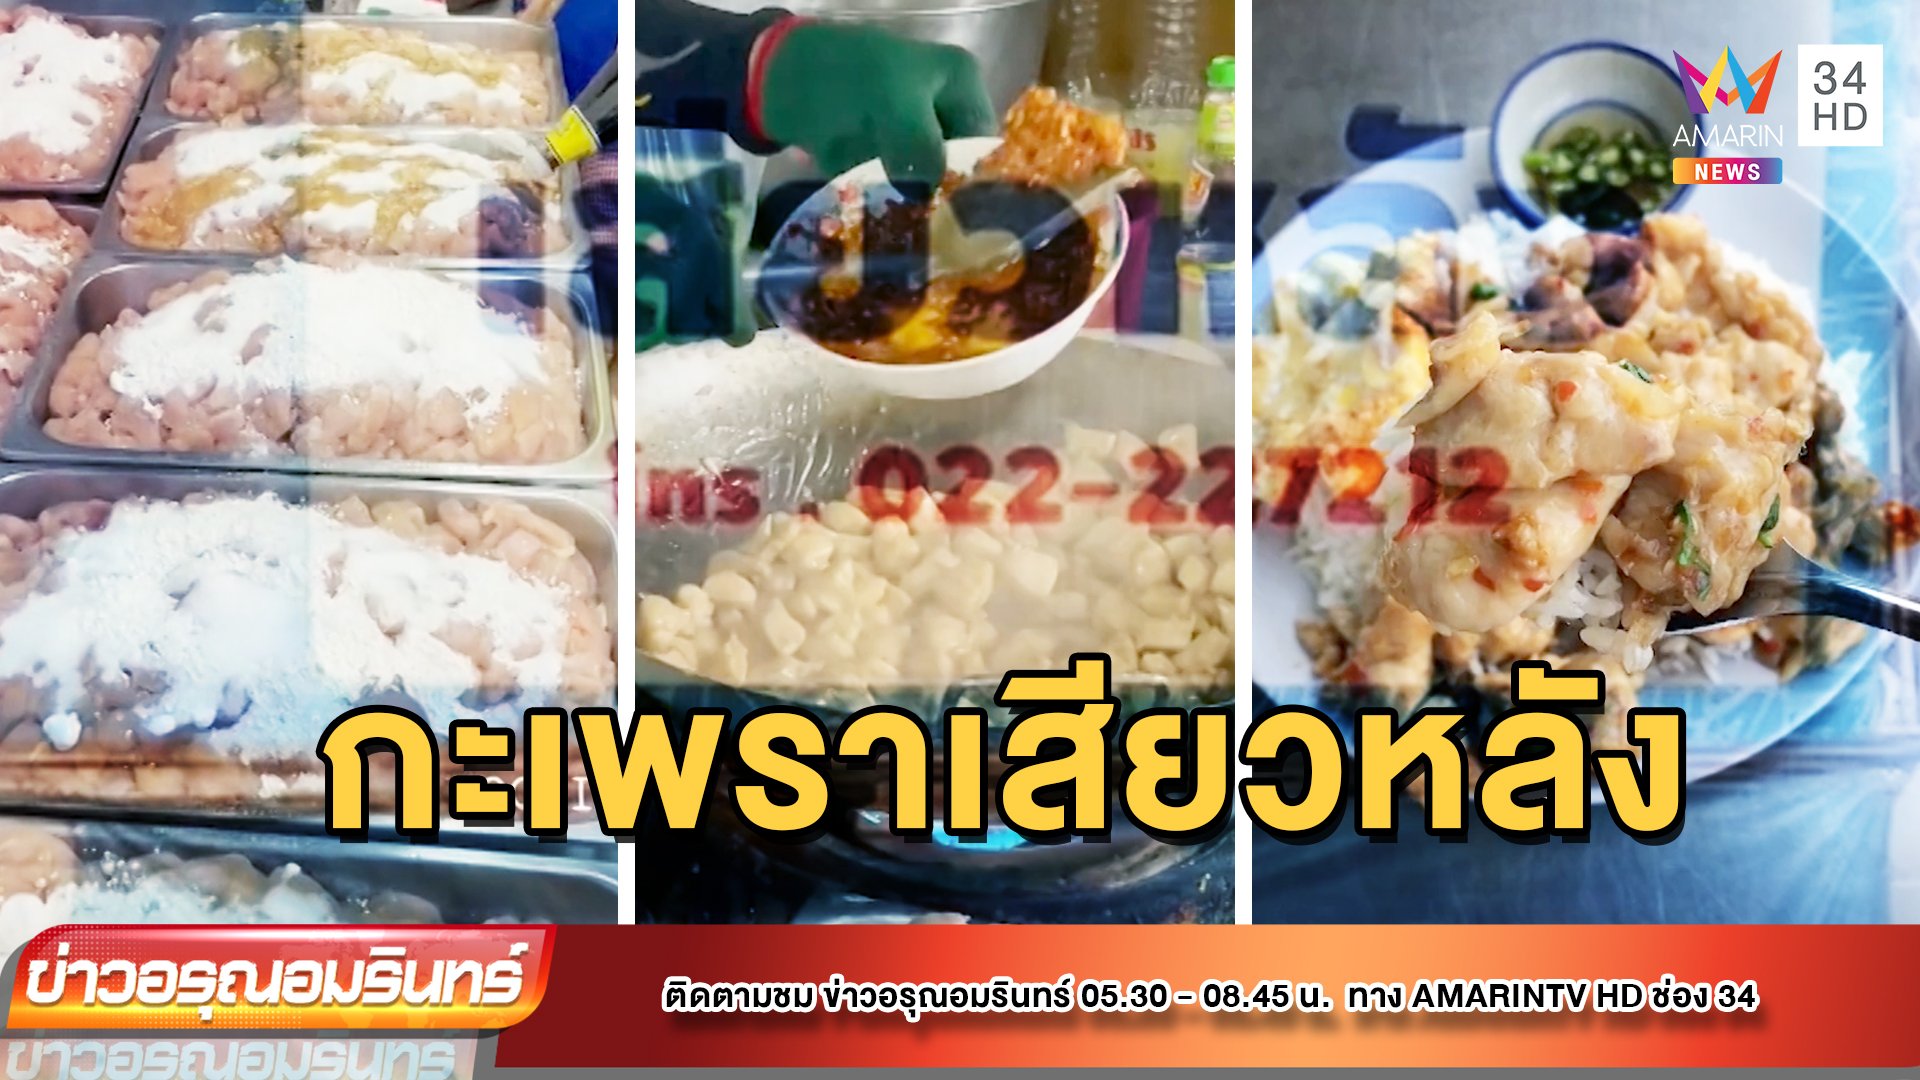 พาชิมเมนูเด็ด ร้านดังปากคลองตลาด ขายมากว่า 45 ปี | ข่าวอรุณอมรินทร์ | 12 พ.ค. 65 | AMARIN TVHD34